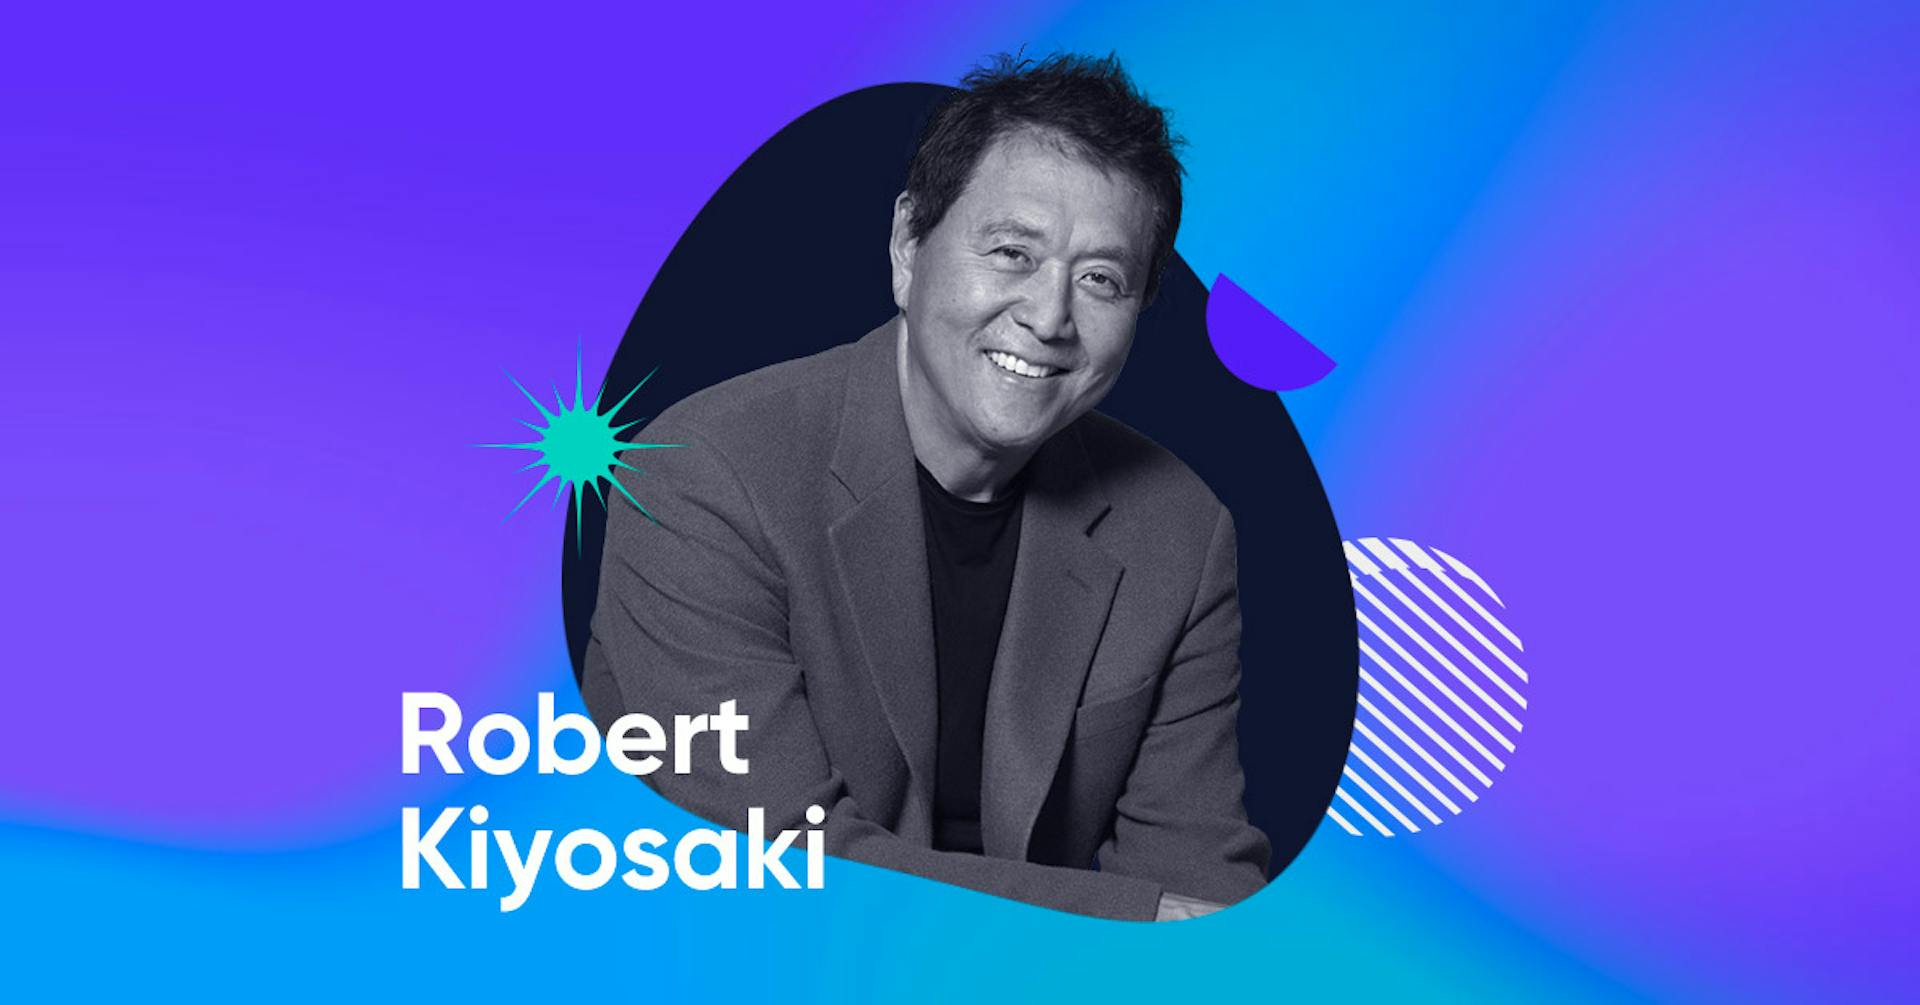 Conoce a Robert Kiyosaki y sus claves para el éxito de tu negocio